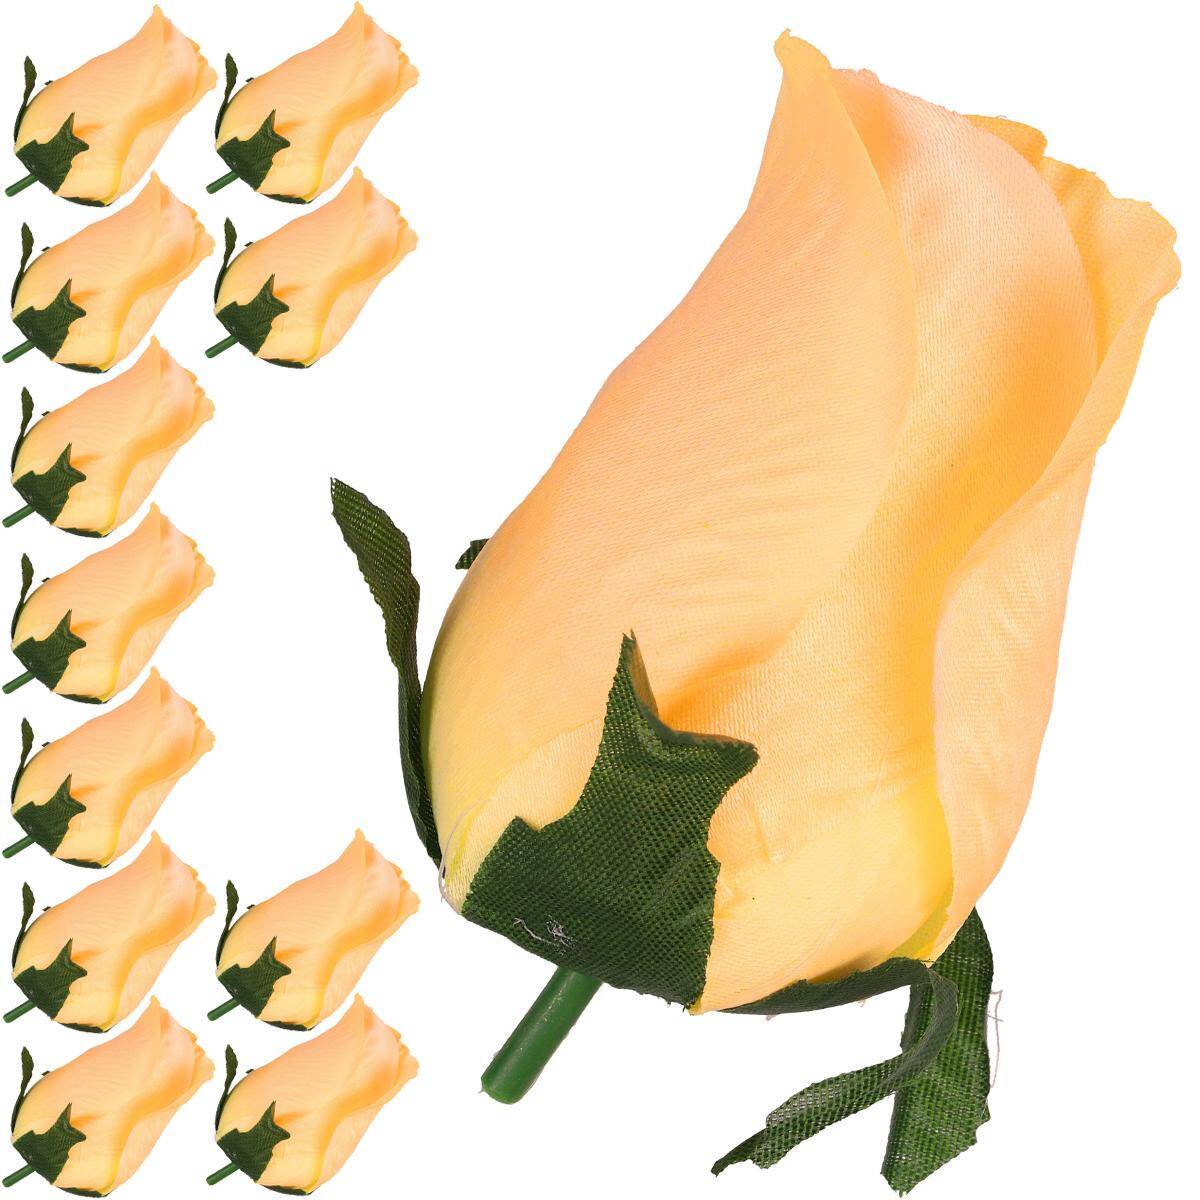 Kwiaty szt. główka pąk róża 9cm BUDYNIOW